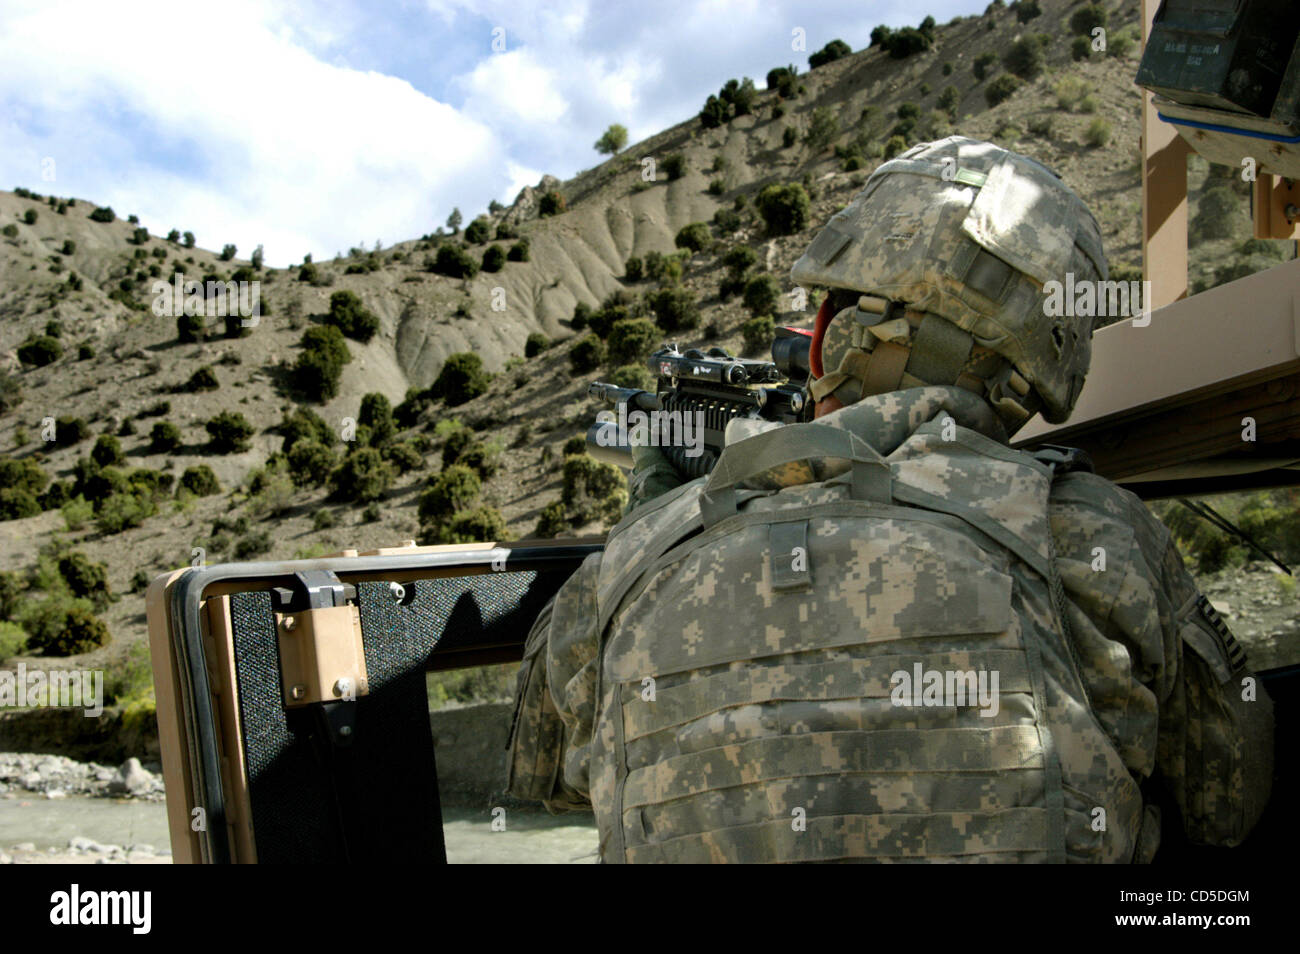 Apr 24, 2008 - La province de Paktya, Afghanistan - Un soldat de la Compagnie Charlie, 1-61, 4e de cavalerie BCT, 101ème Abn., boucliers lui-même derrière son Humvee, couvrant avec son M203 (M-4 carbine et lance-grenades de 20 mm) combiné ses coéquipiers qu'ils escaladent la crête hors de vue dans la poursuite des personnes soupçonnées d'ACM Banque D'Images